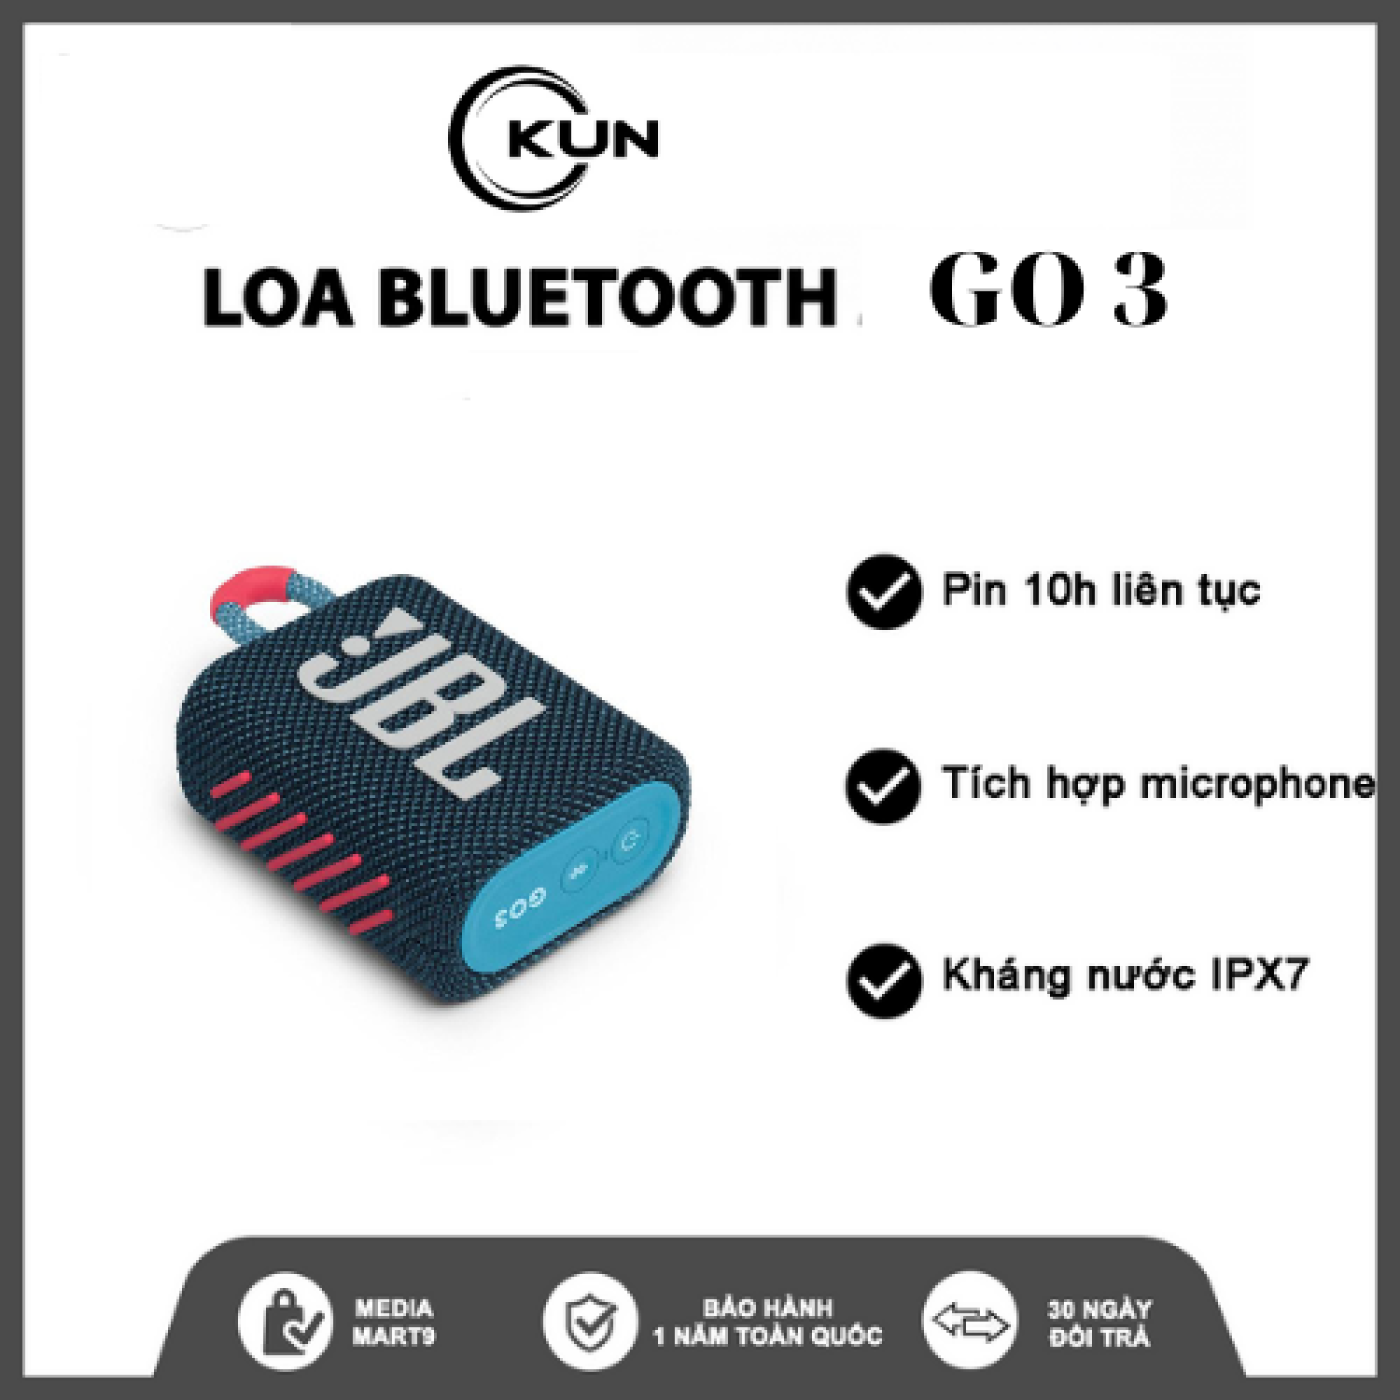 Loa Bluetooth Không Dây JBL Go 3 Hàng Repp 1-1 - Chơi Nhạc 5H - Bluetooth 5.1.Nhỏ Gọn Tiện Lợi